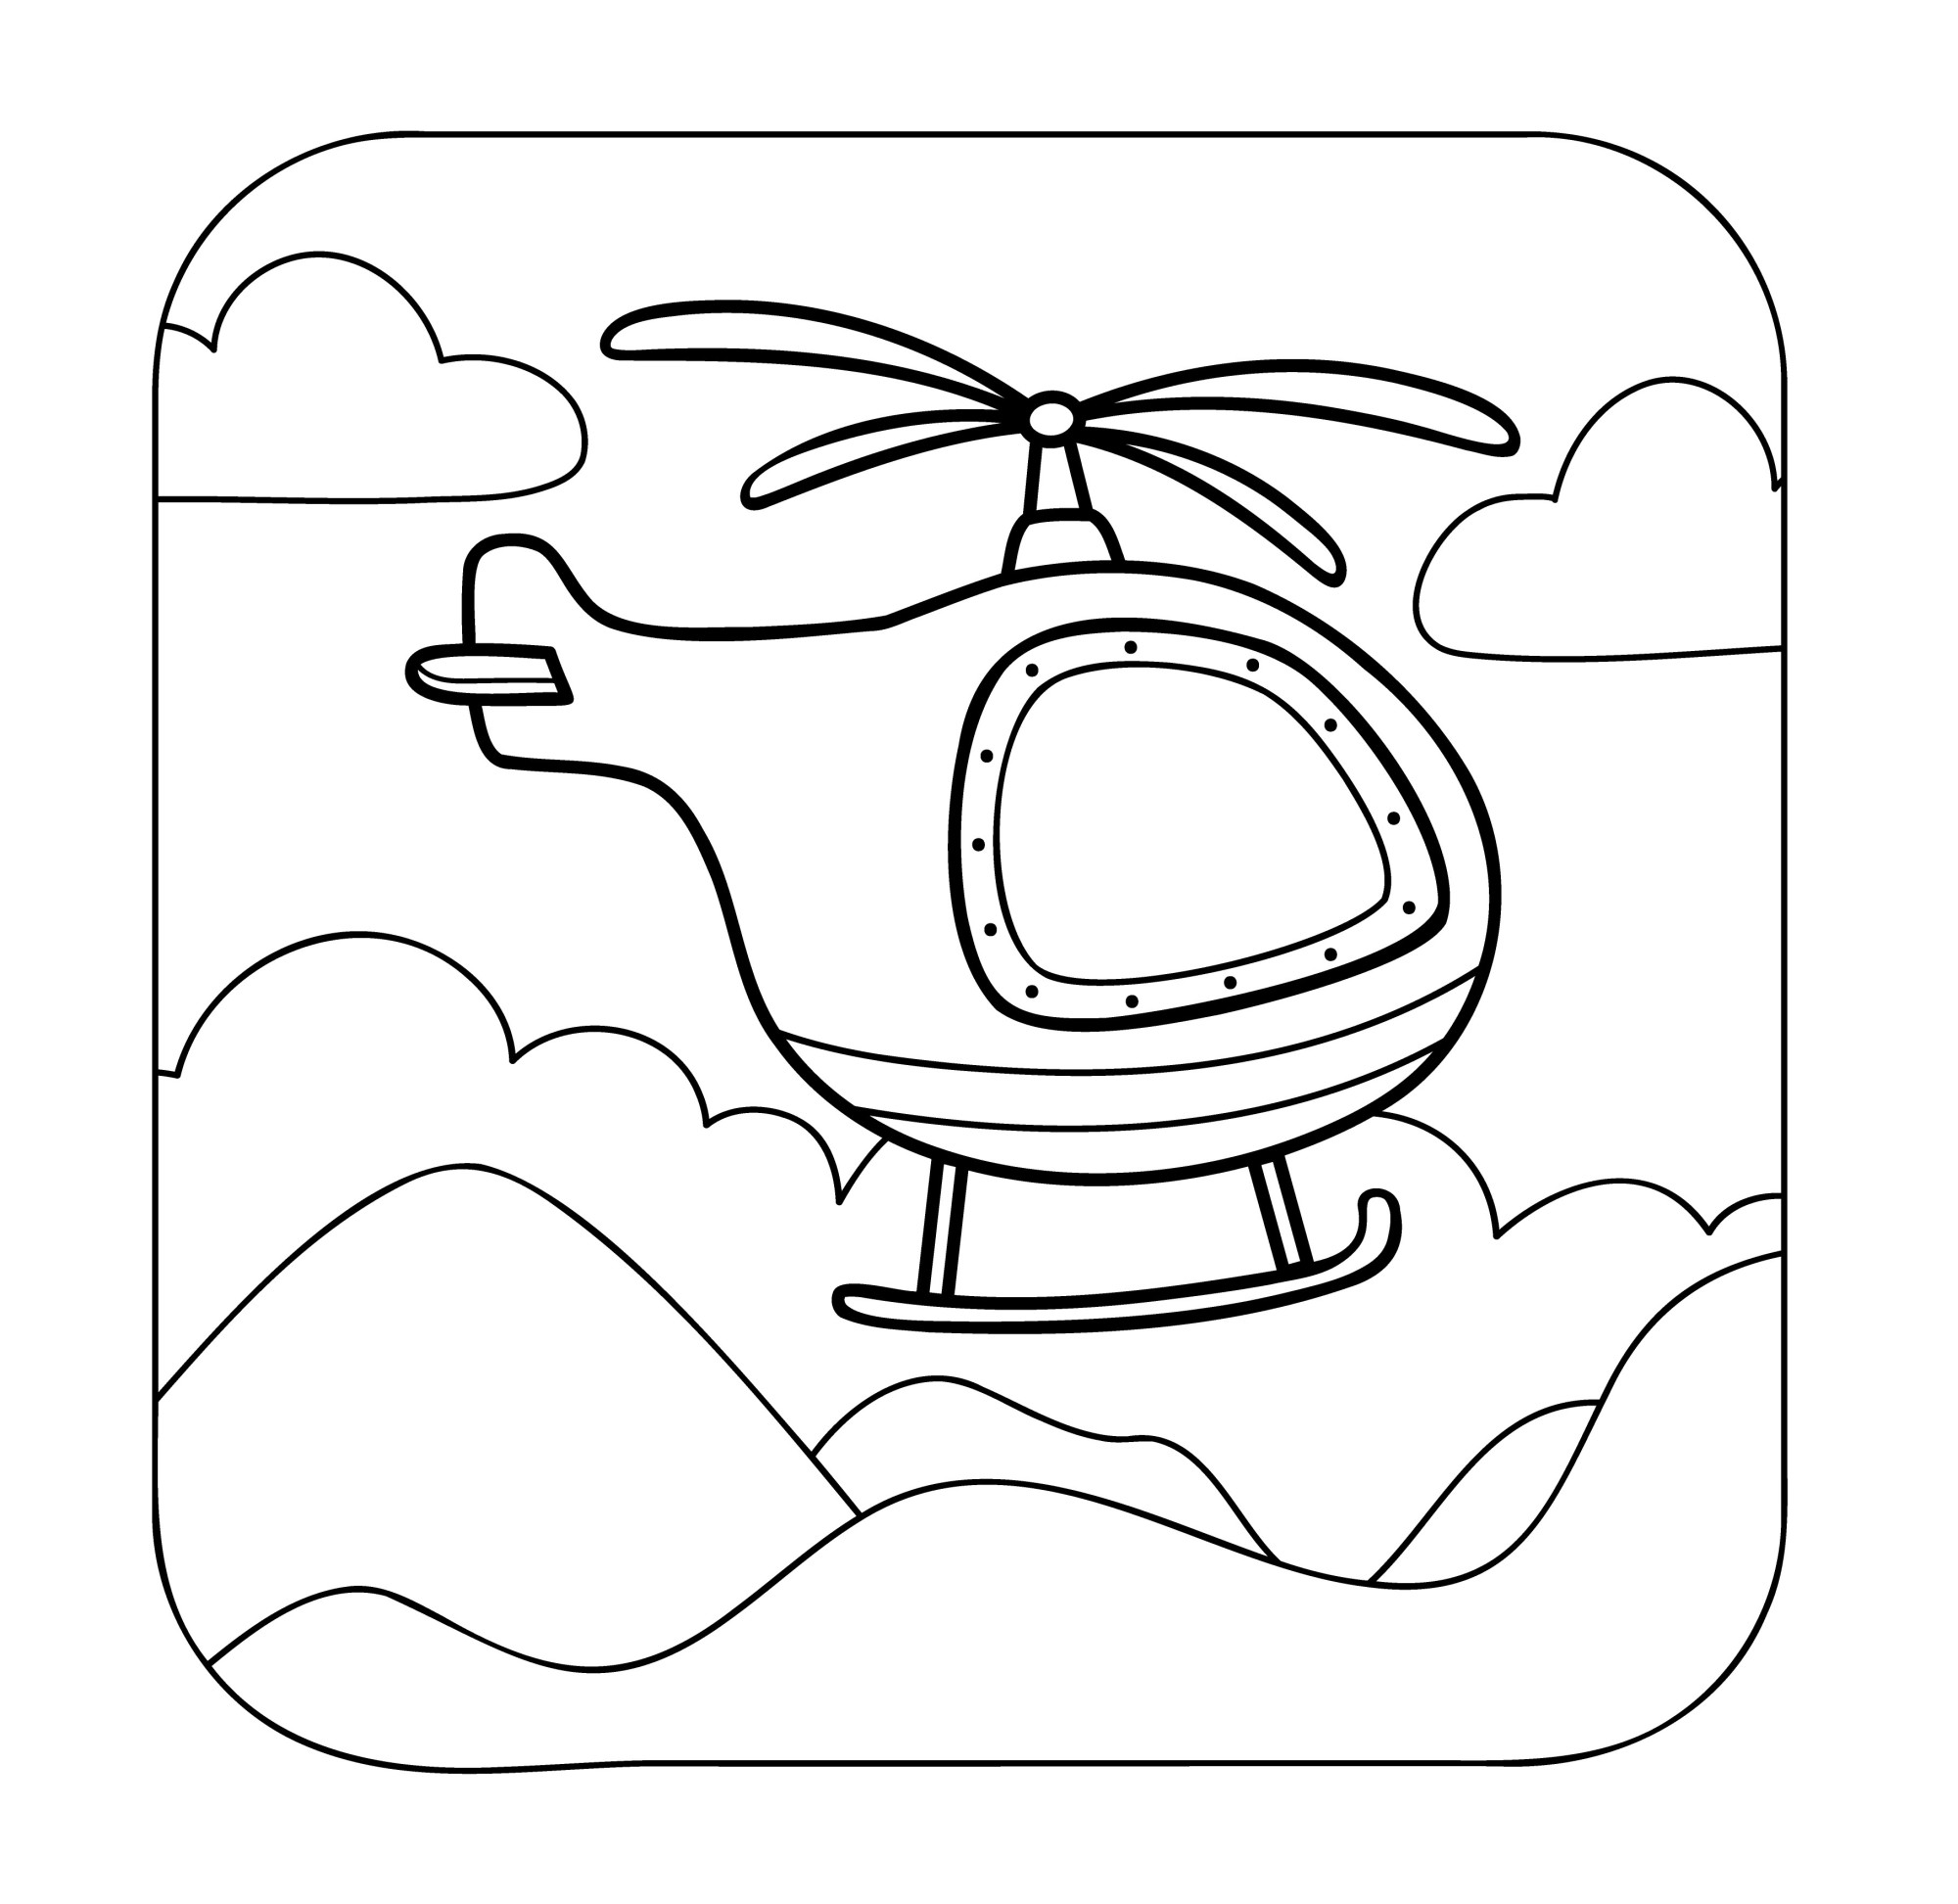 Раскраска для детей: вертолет над облаками